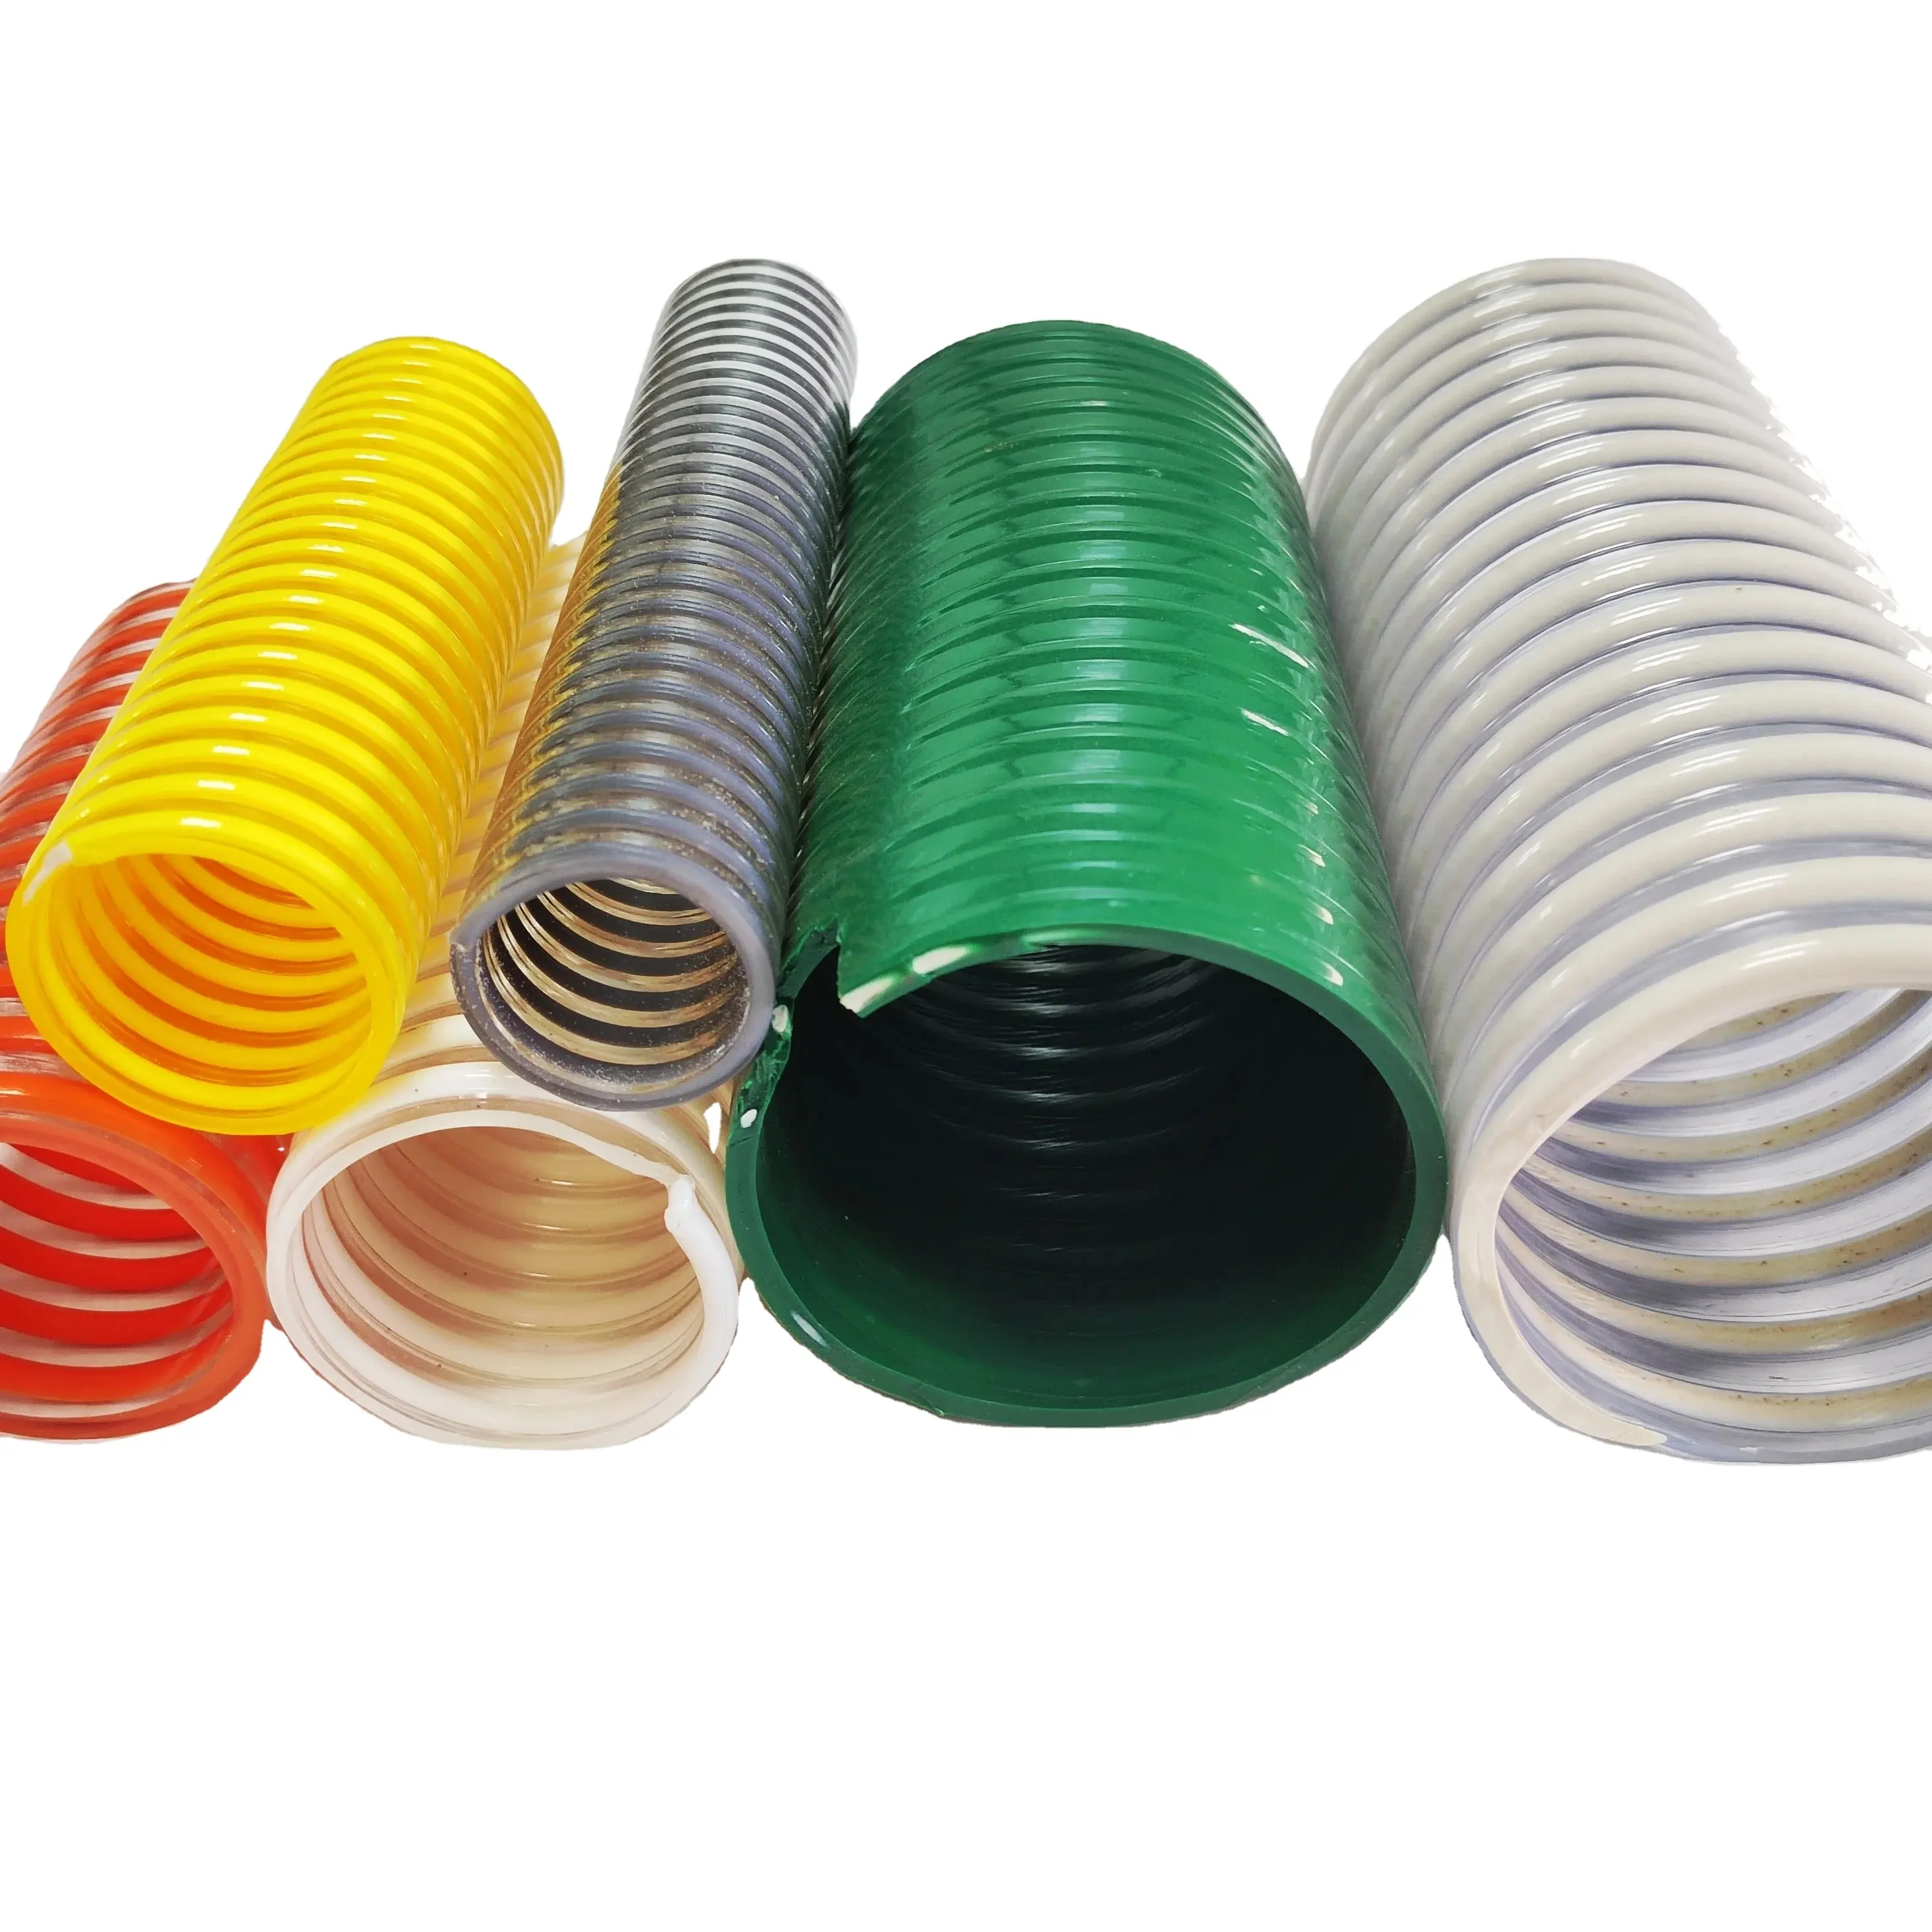 3 pouces 76mm Flexible Plastic PVC Helix Water Pump Suction Discharge Spiral Tube Hose